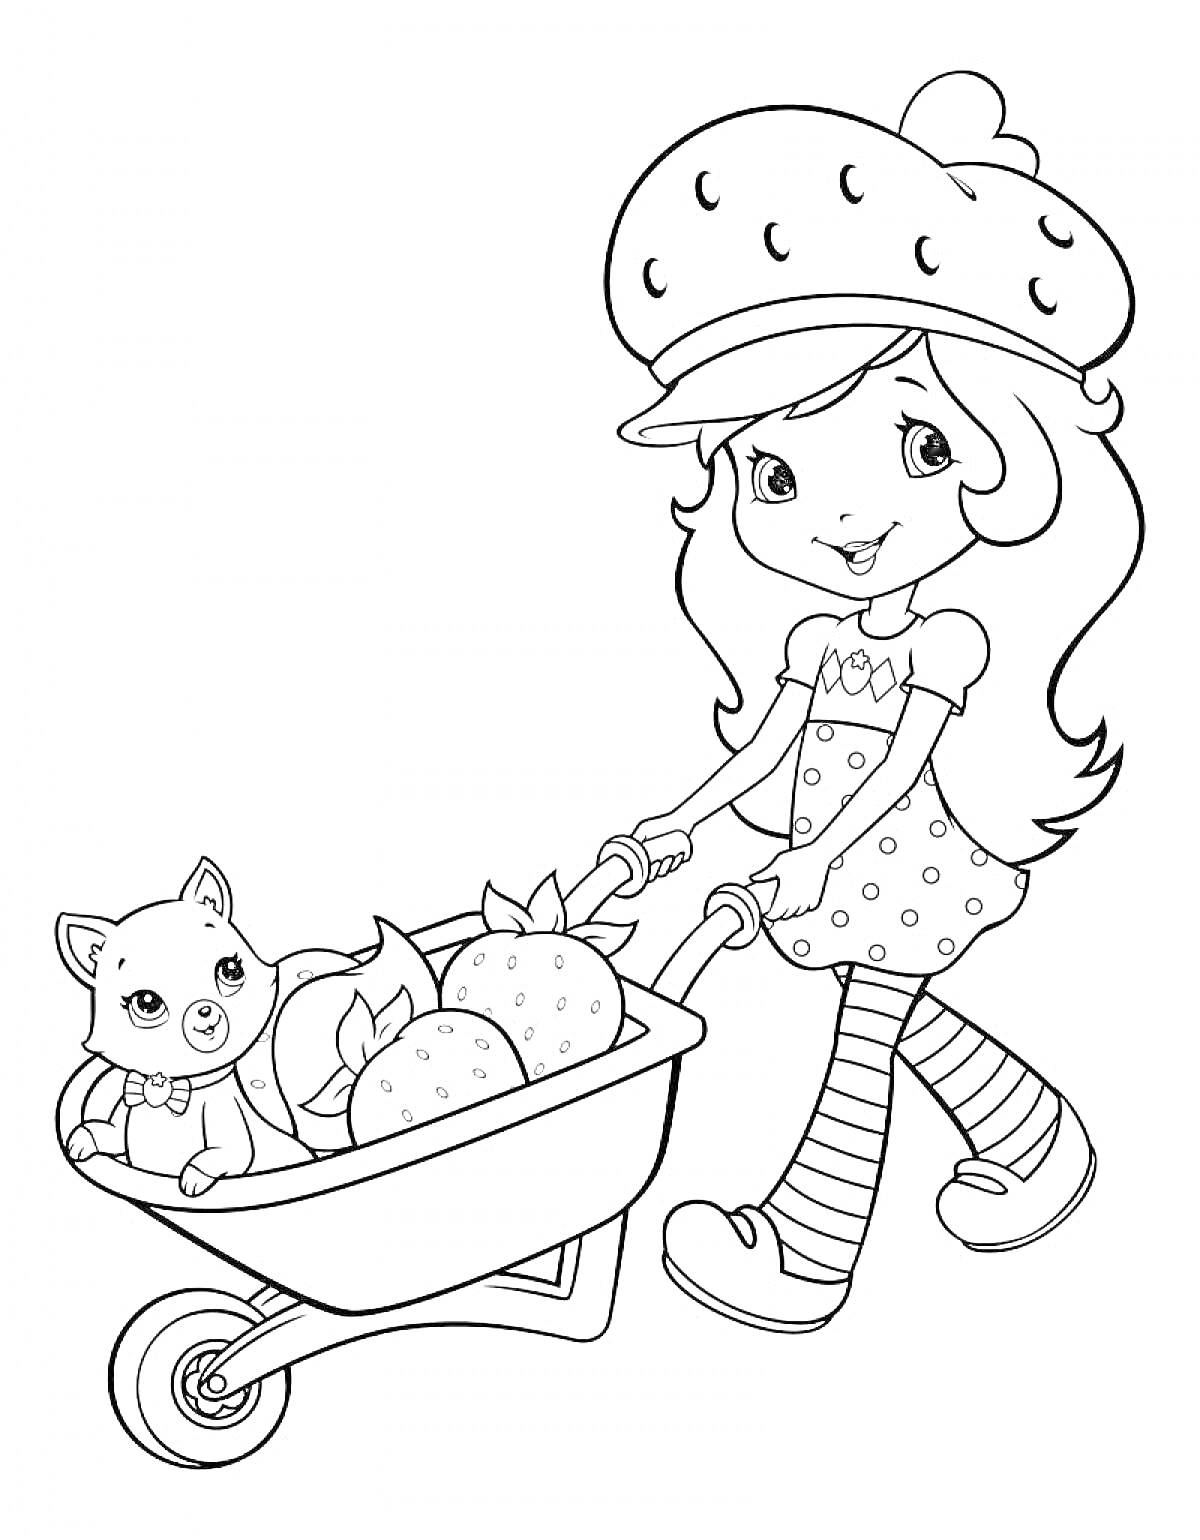 Раскраска Девочка в шапке с клубникой и котенком в тачке, полной клубники